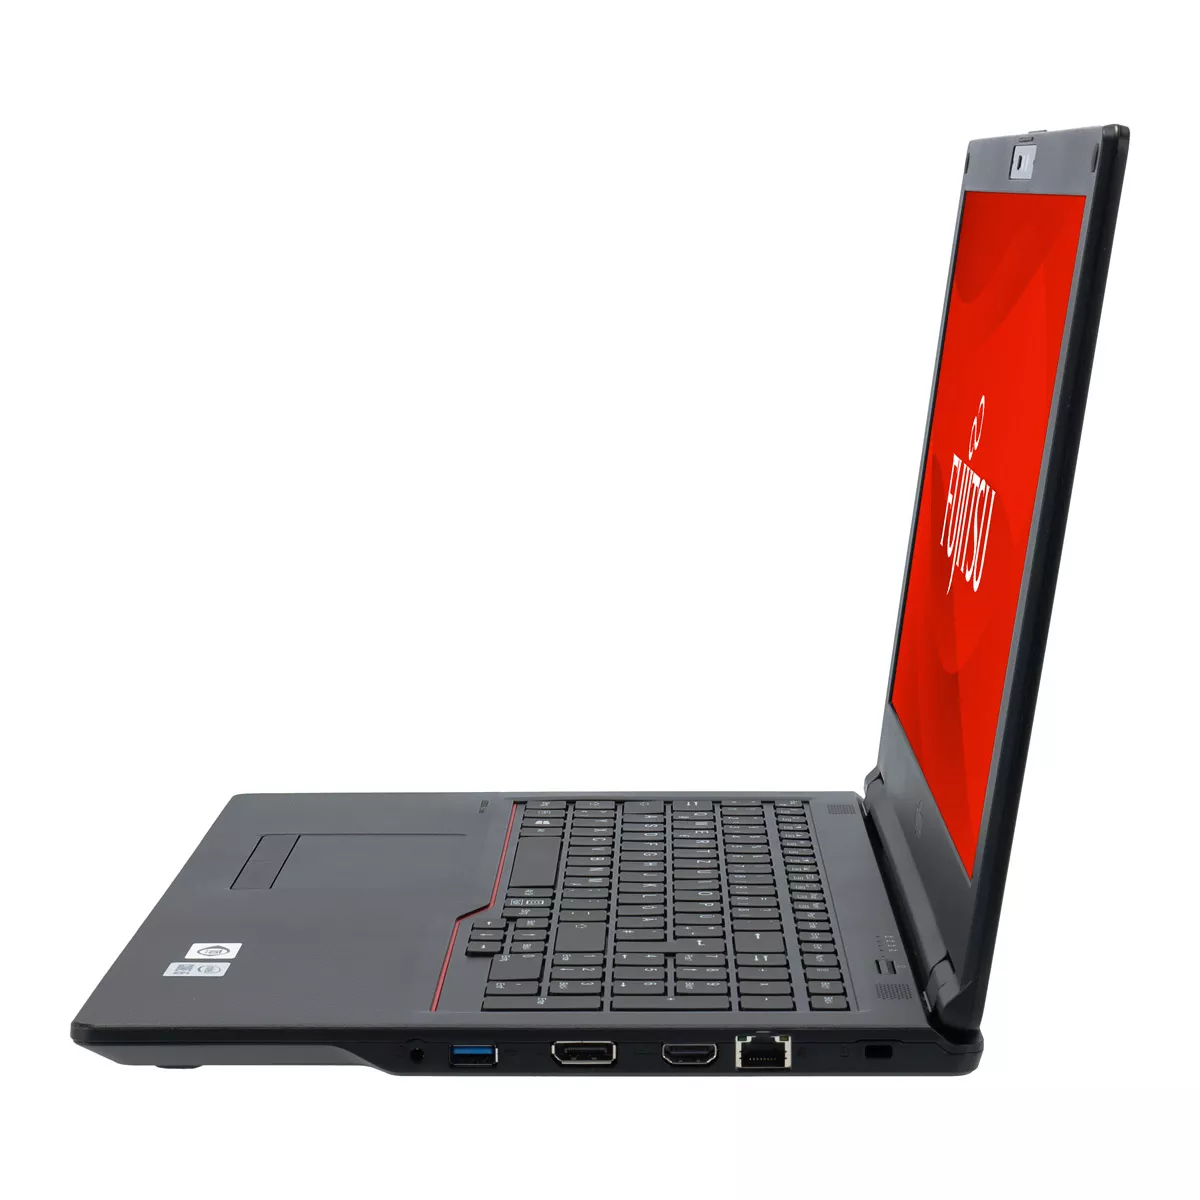 Fujitsu Lifebook E558 Core i5 8350U 8 GB DDR4 240 M.2 SSD Webcam A